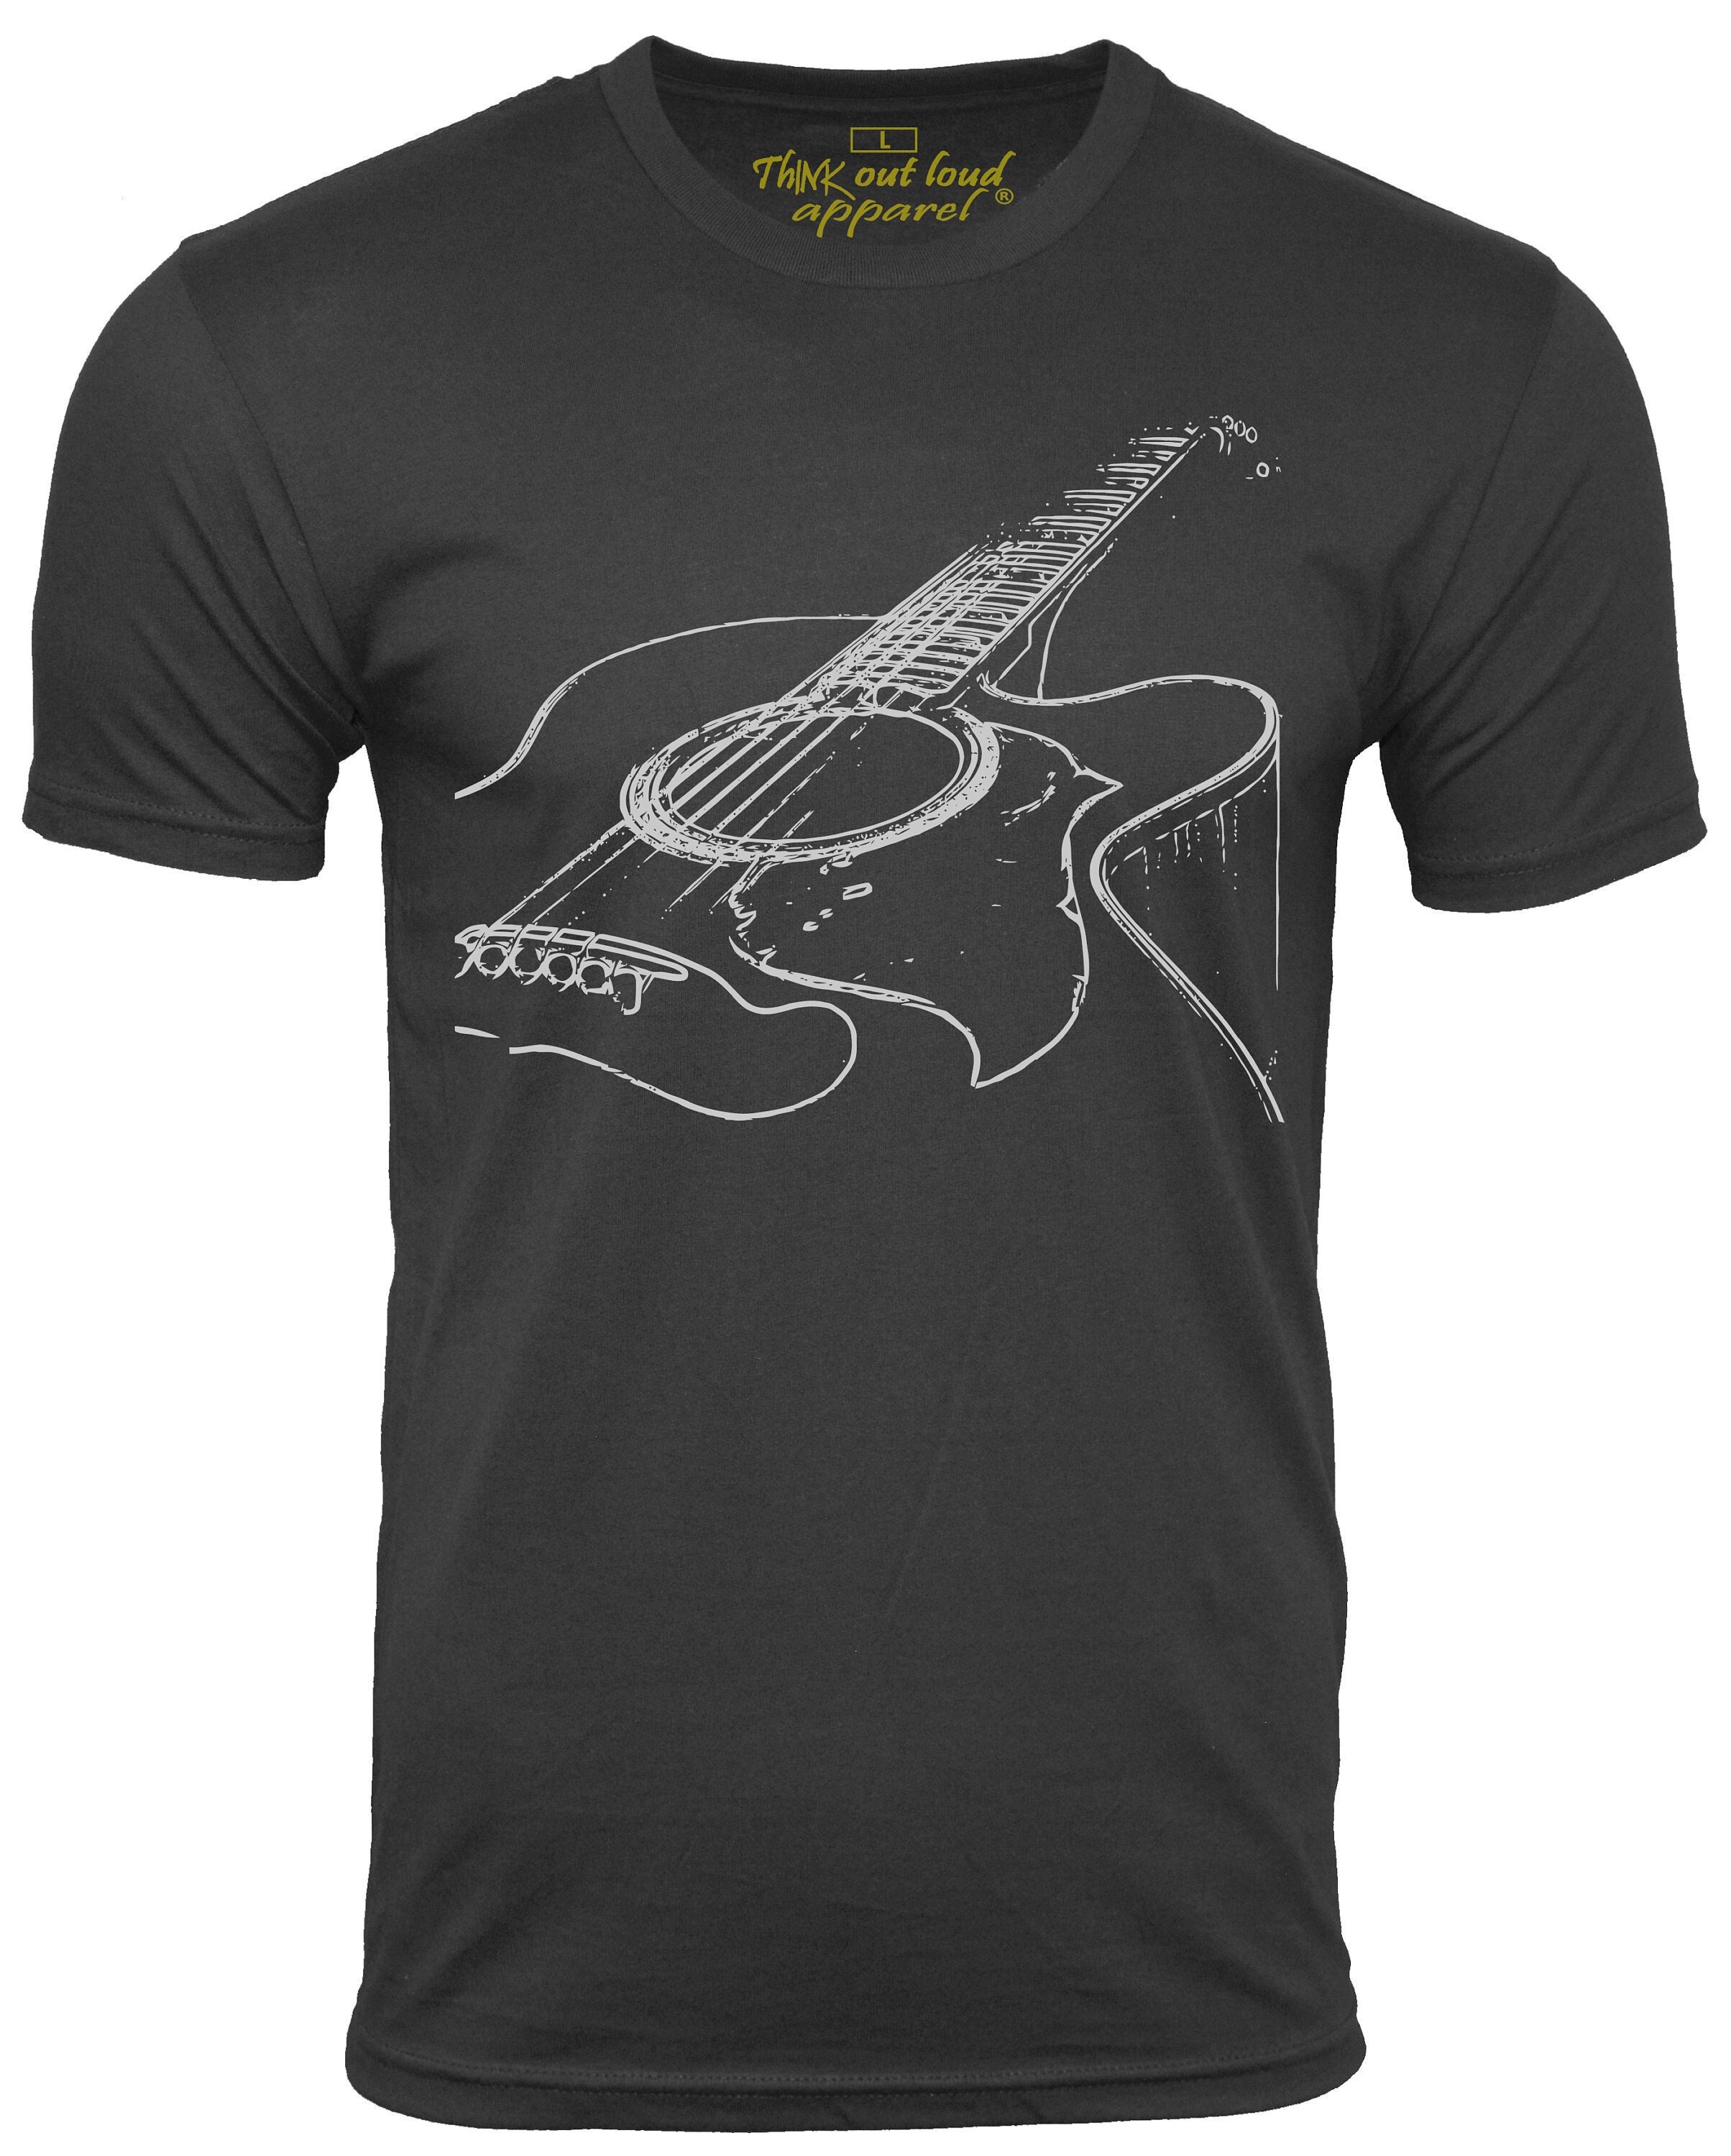 4. Acoustic Guitar T-Shirt